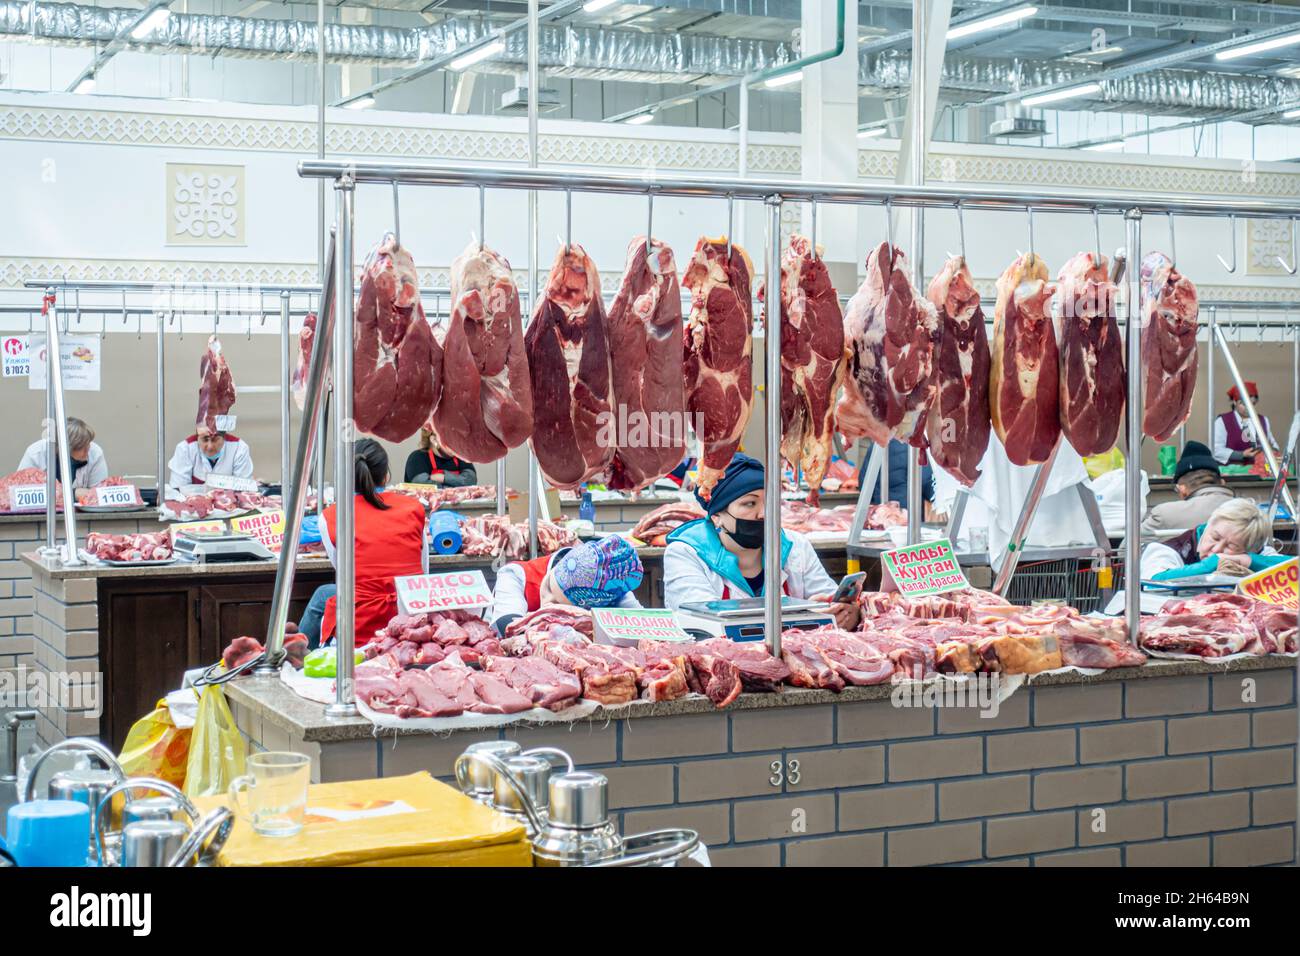 Rohes Fleisch zeigt den Altyn Orda Markt, den größten Markt in Almaty, Kasachstan. Schneiden Sie Fleischstücke hängen; Händler hinter Theken. Stockfoto